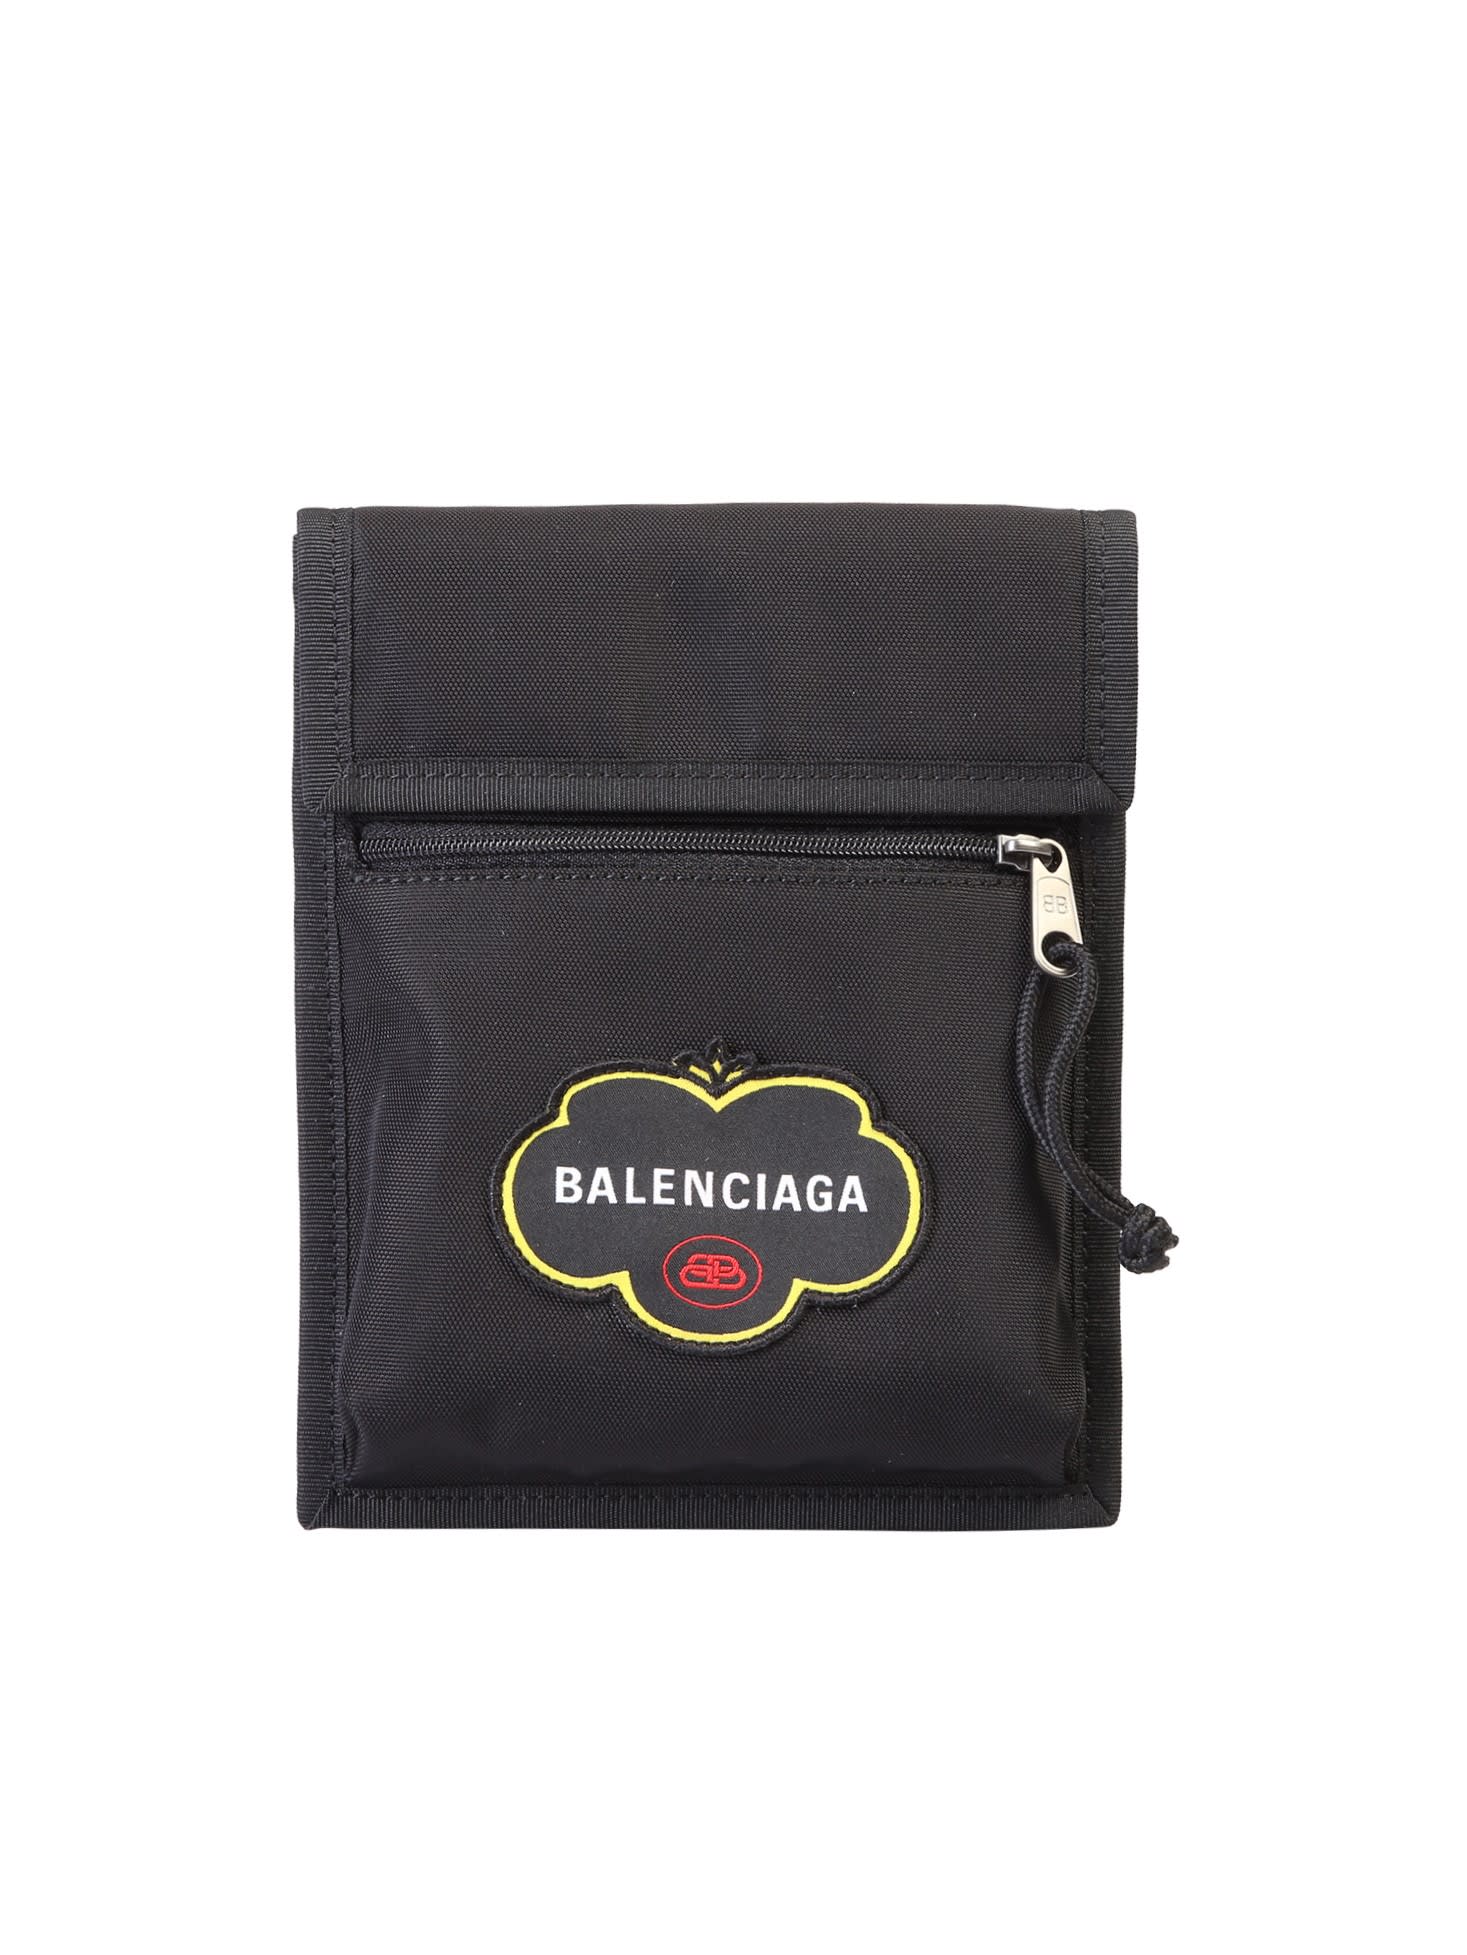 Balenciaga Explorer Bag In Black